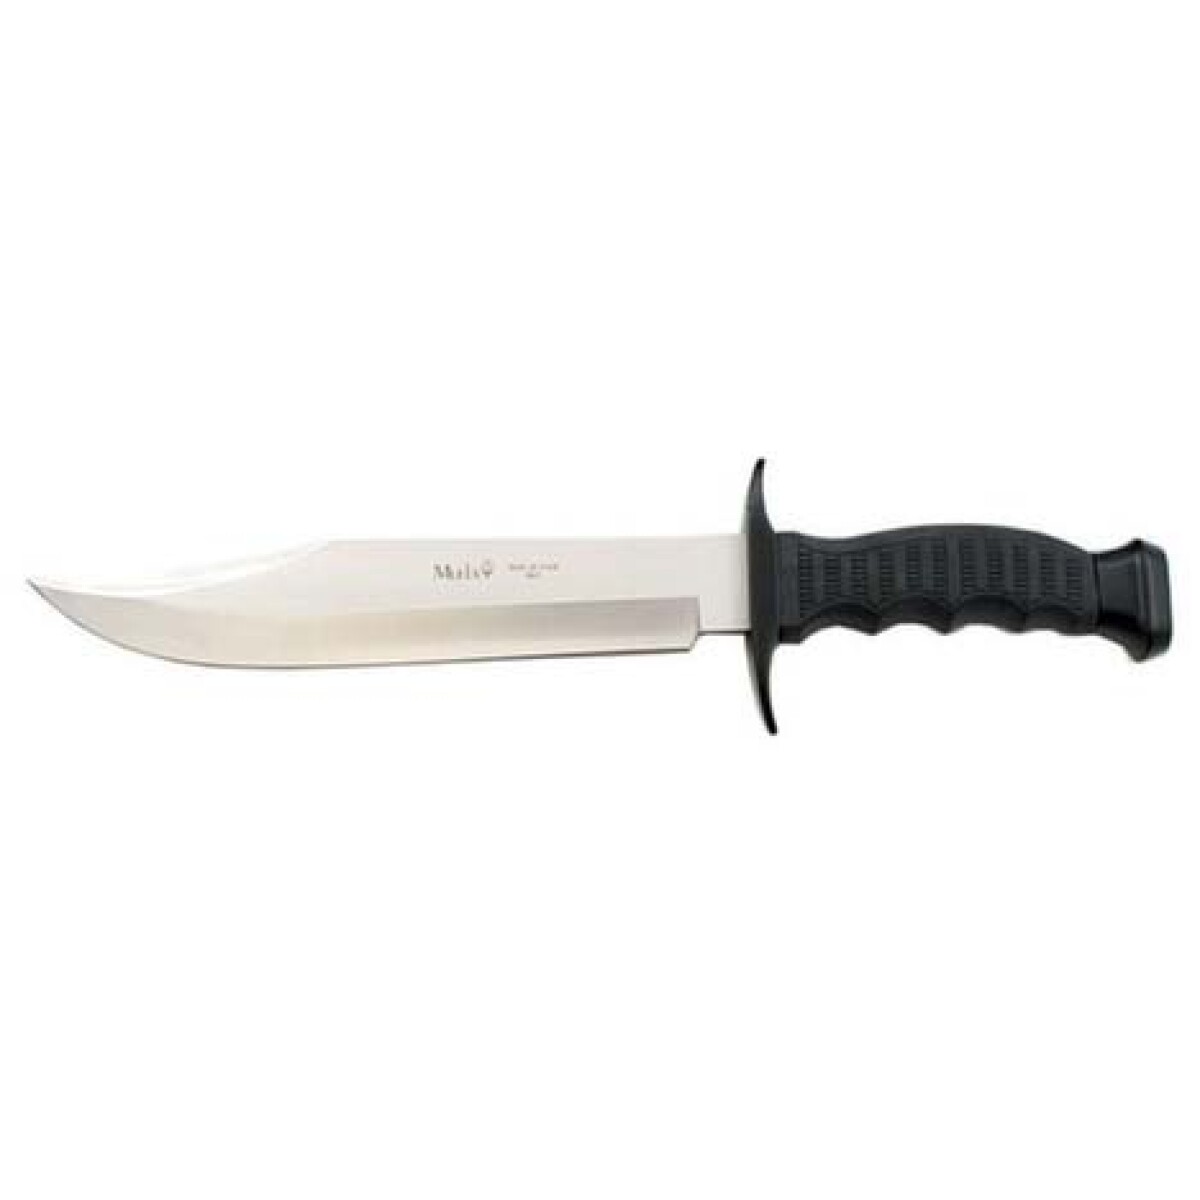 Cuchillo Muela C/negro 95-181 